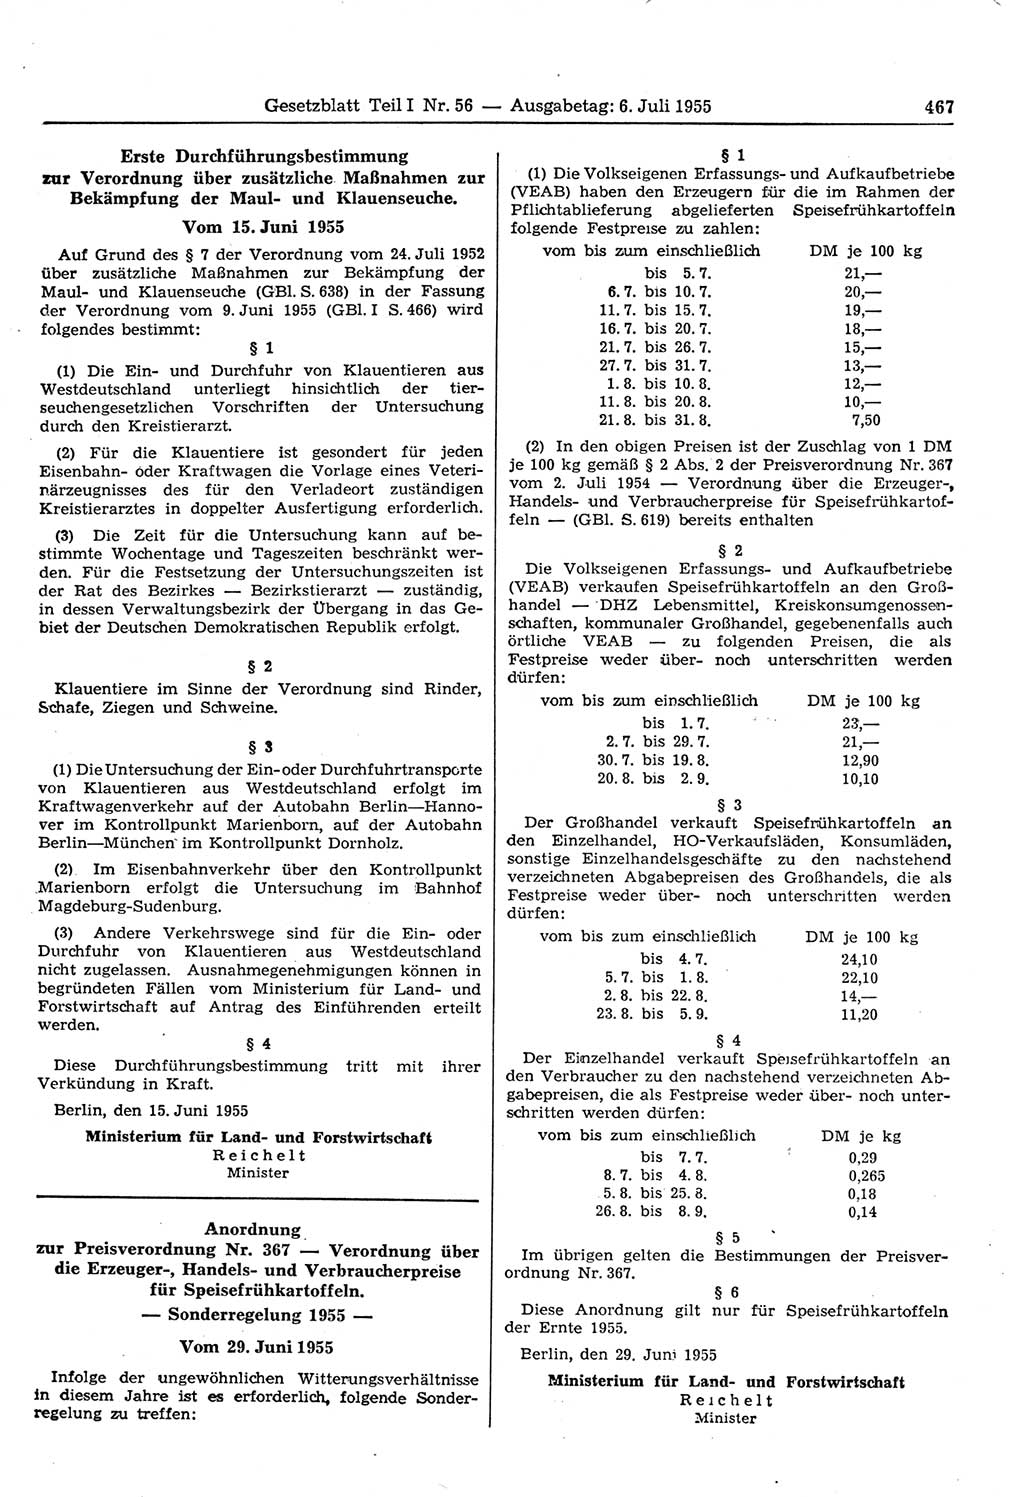 Gesetzblatt (GBl.) der Deutschen Demokratischen Republik (DDR) Teil Ⅰ 1955, Seite 467 (GBl. DDR Ⅰ 1955, S. 467)